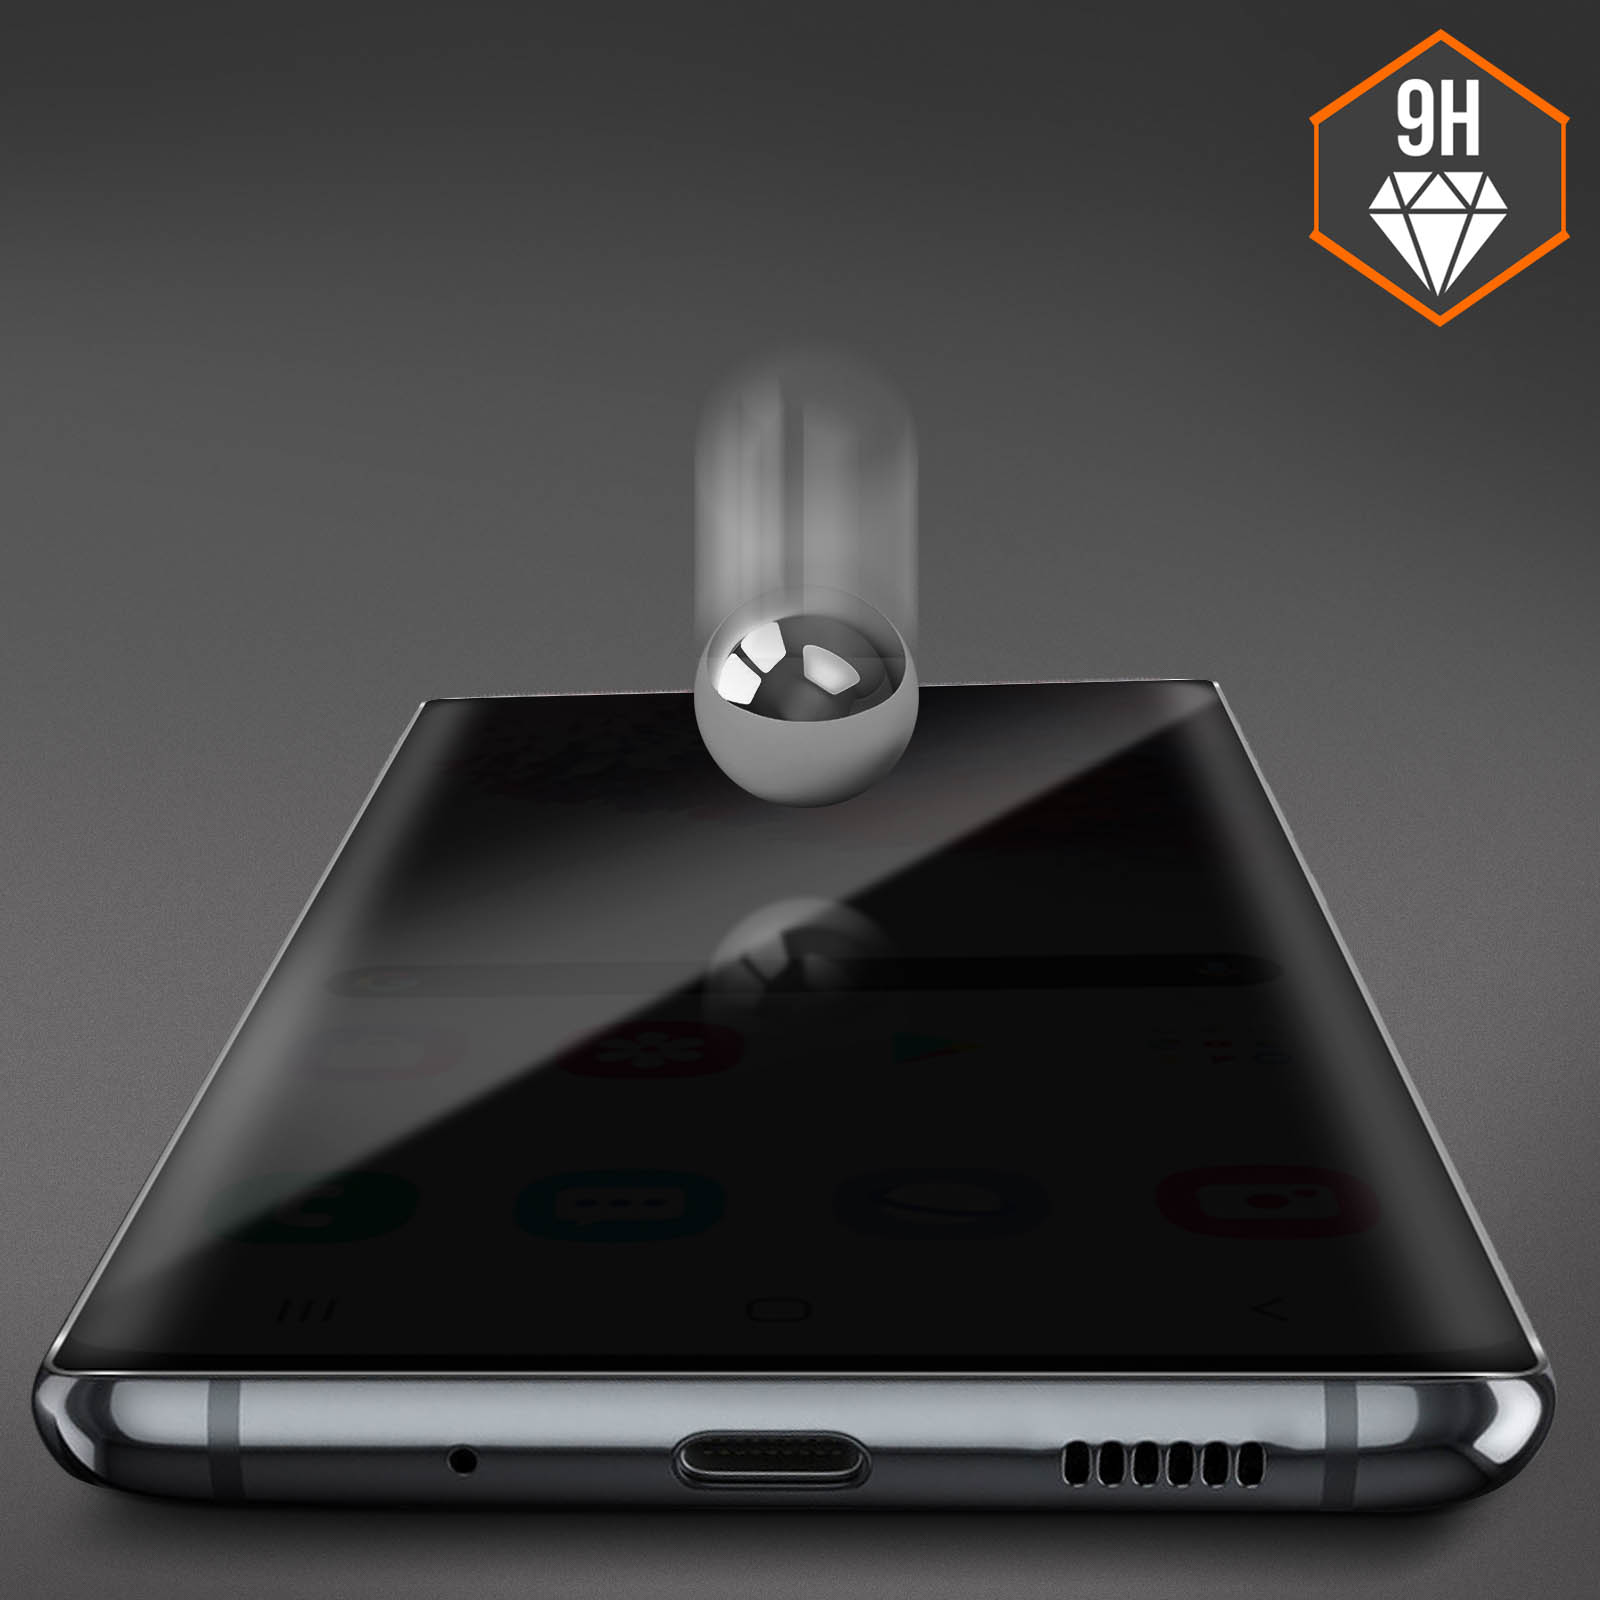 Protection en verre trempé Samsung S20+ - 3,90 €